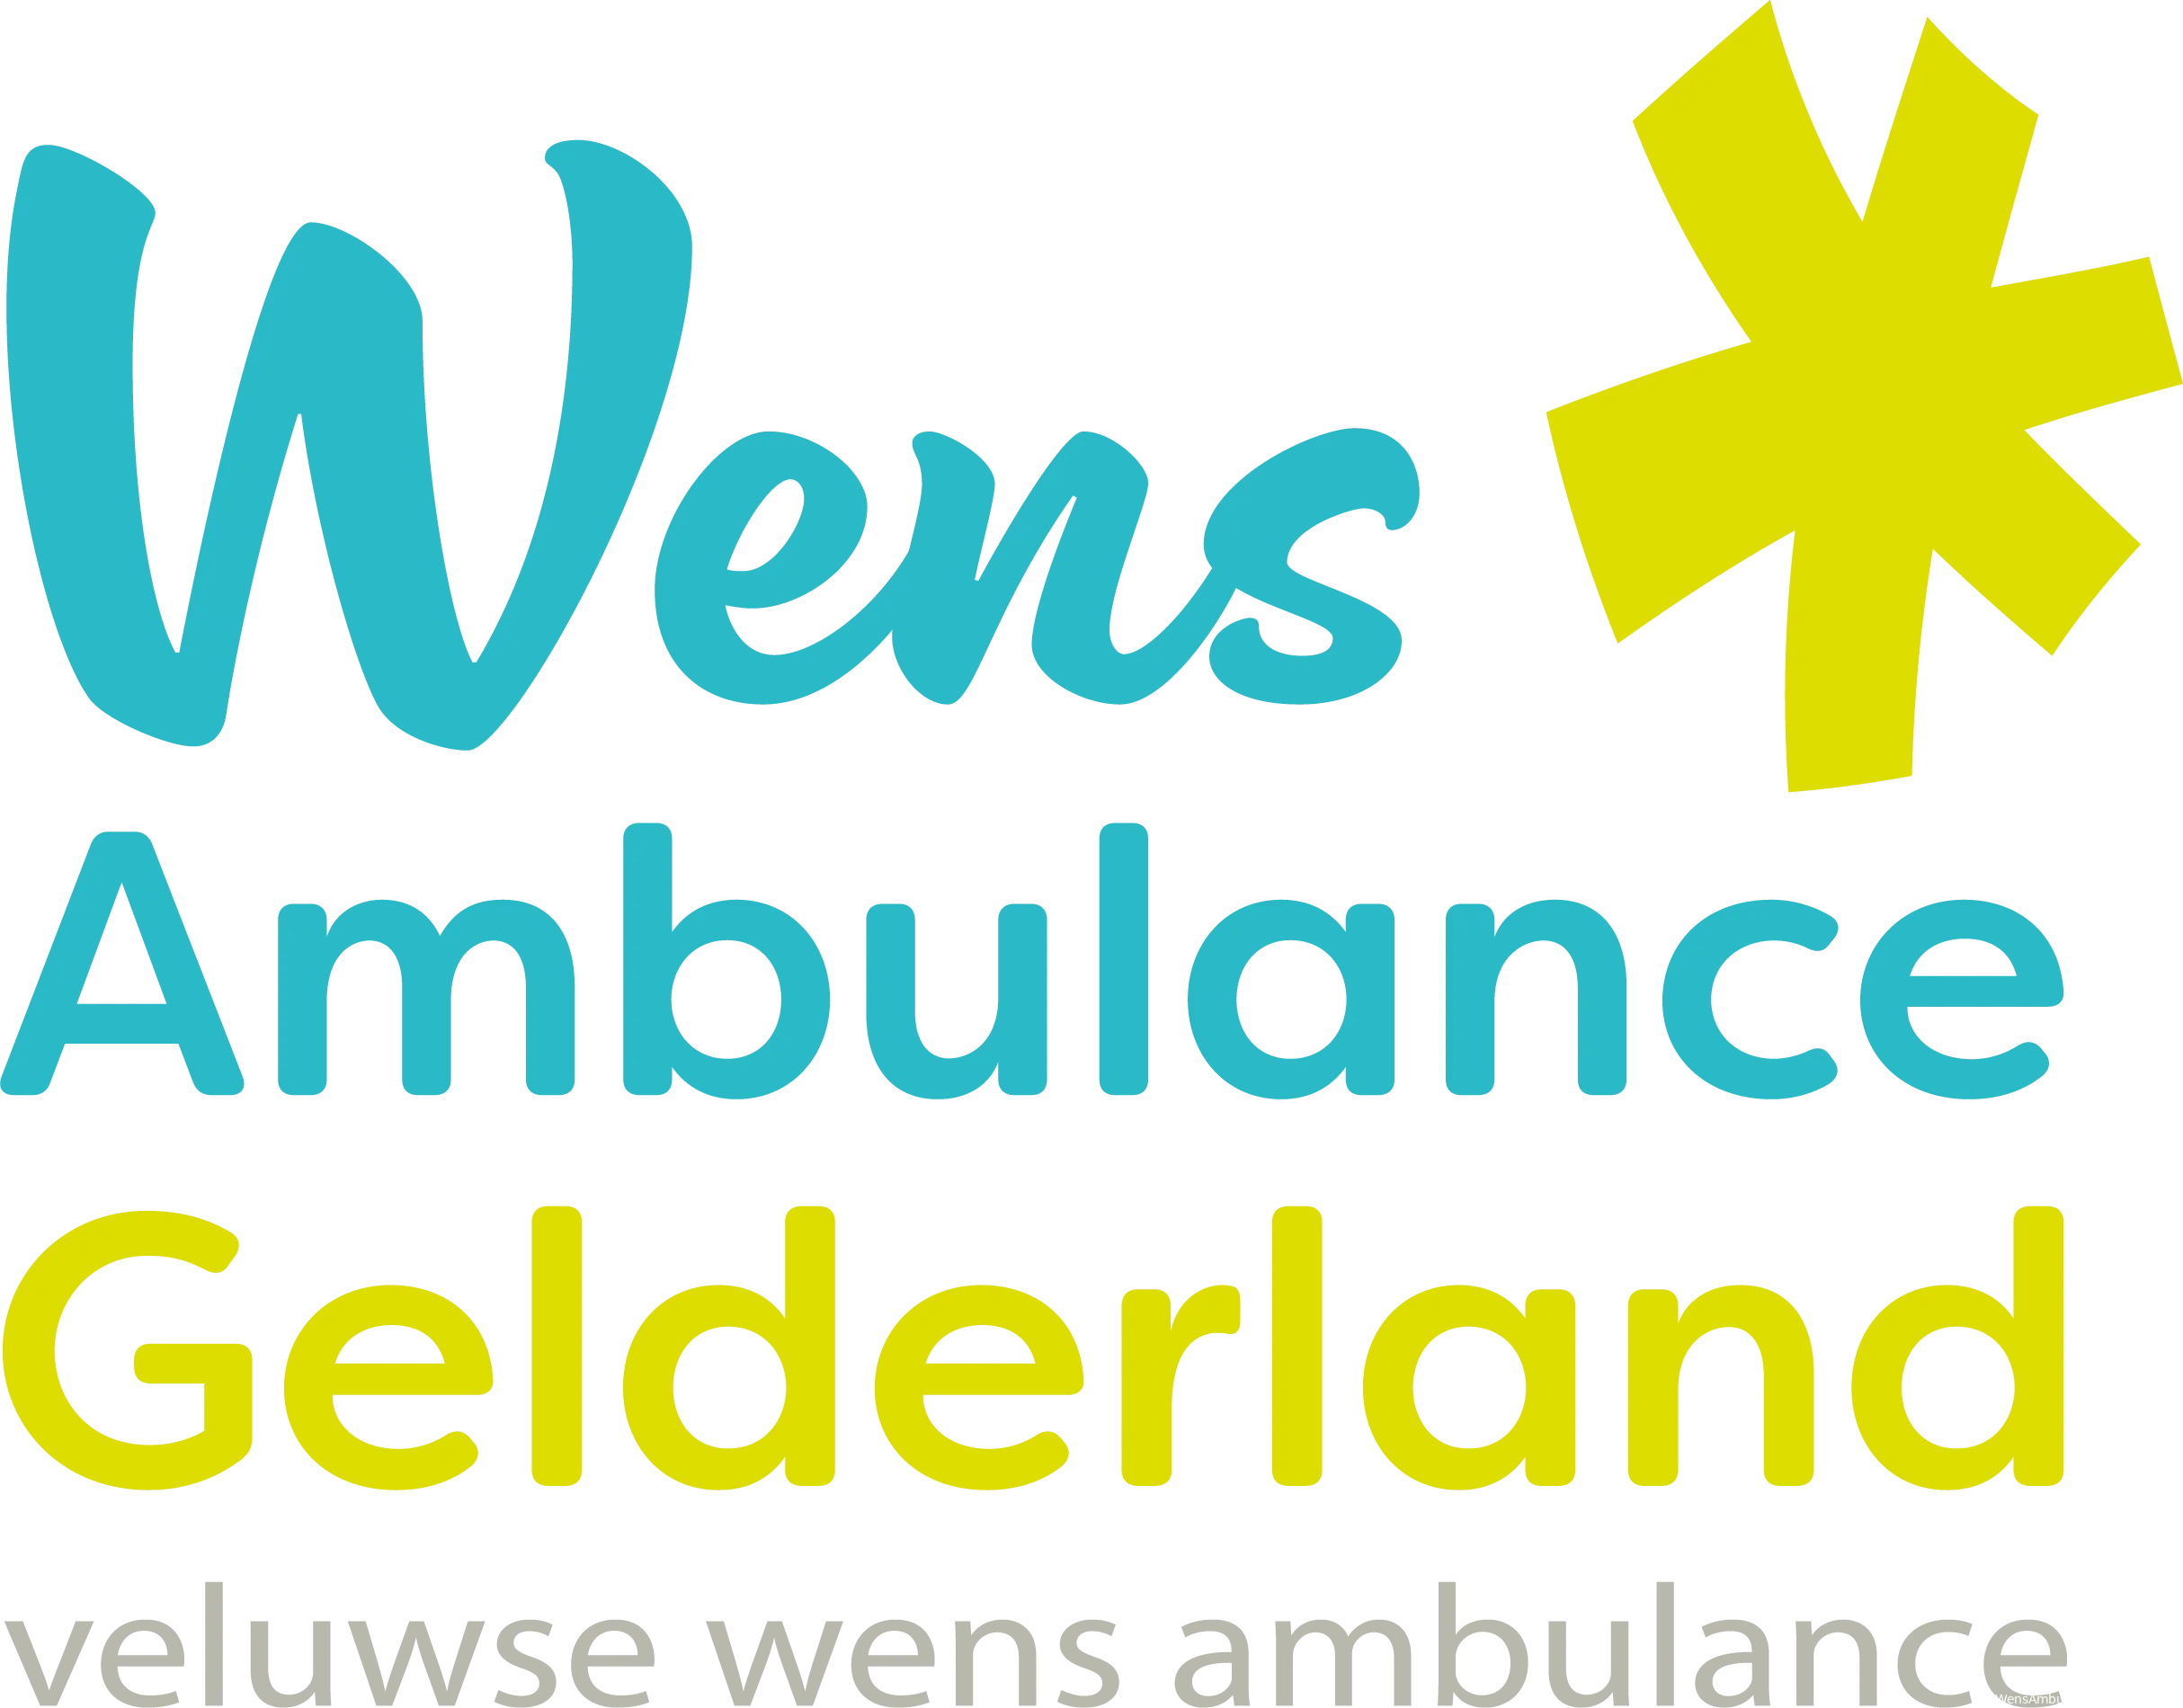 vwa gelderland logo def zndr schaduw